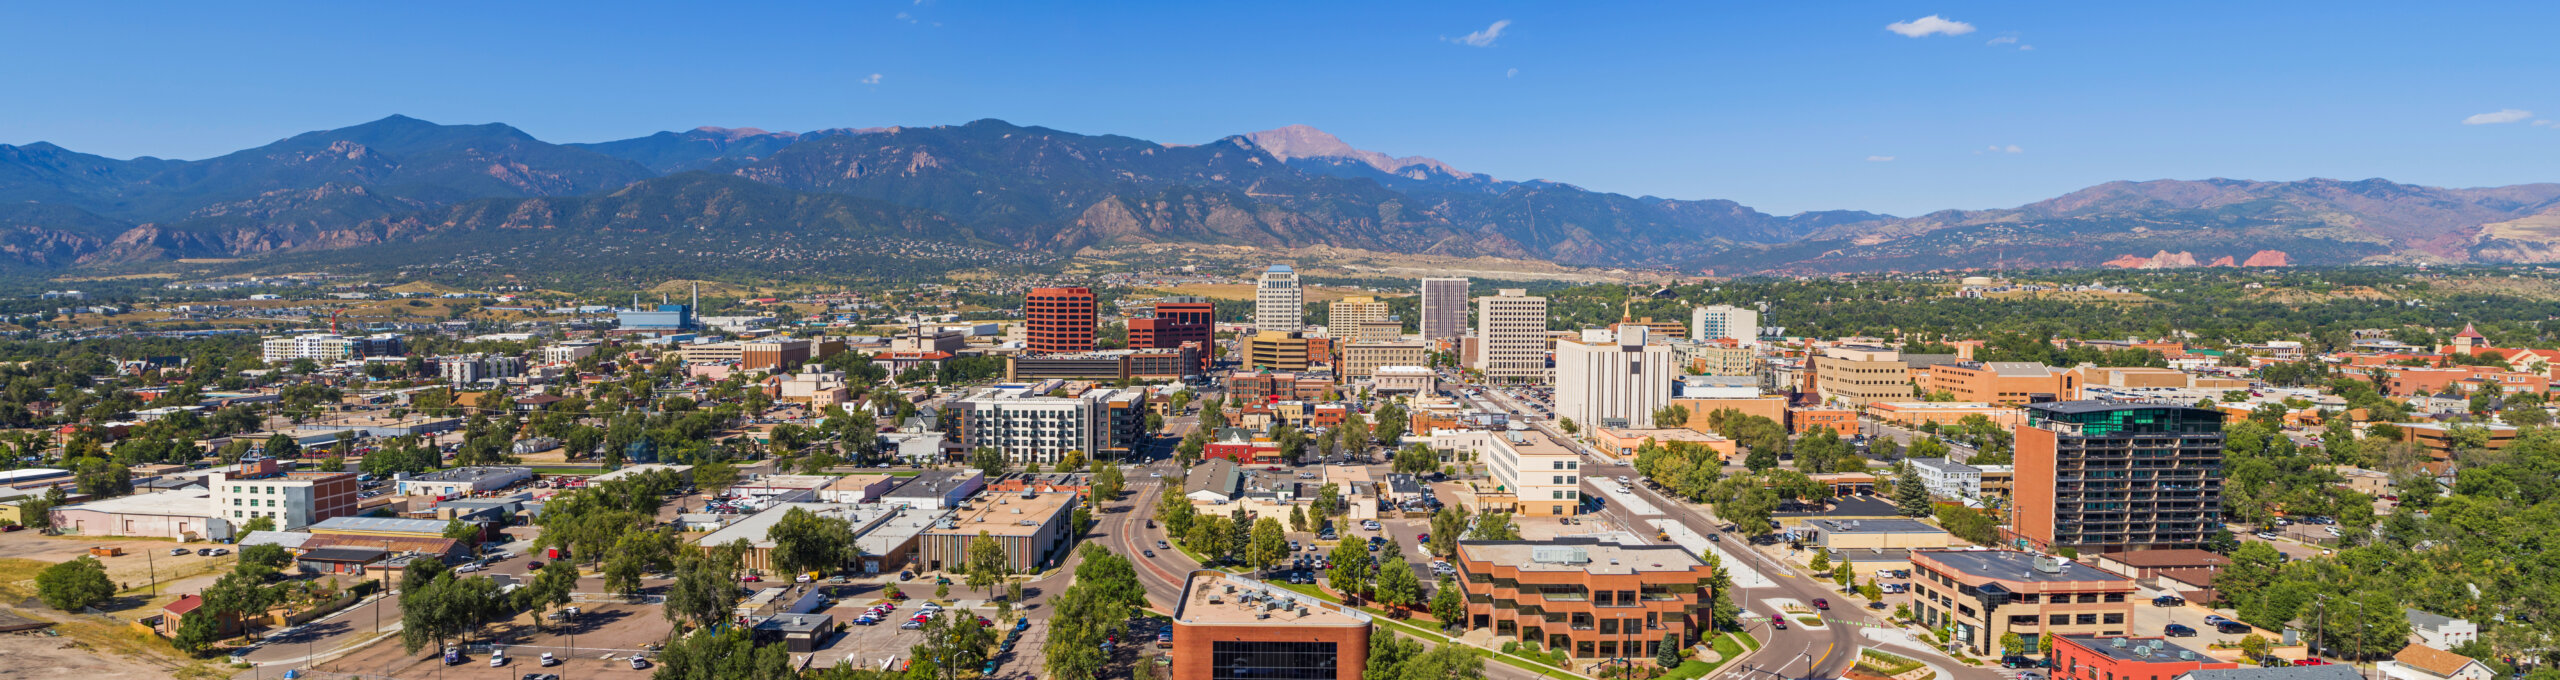 Colorado – Colorado Springs